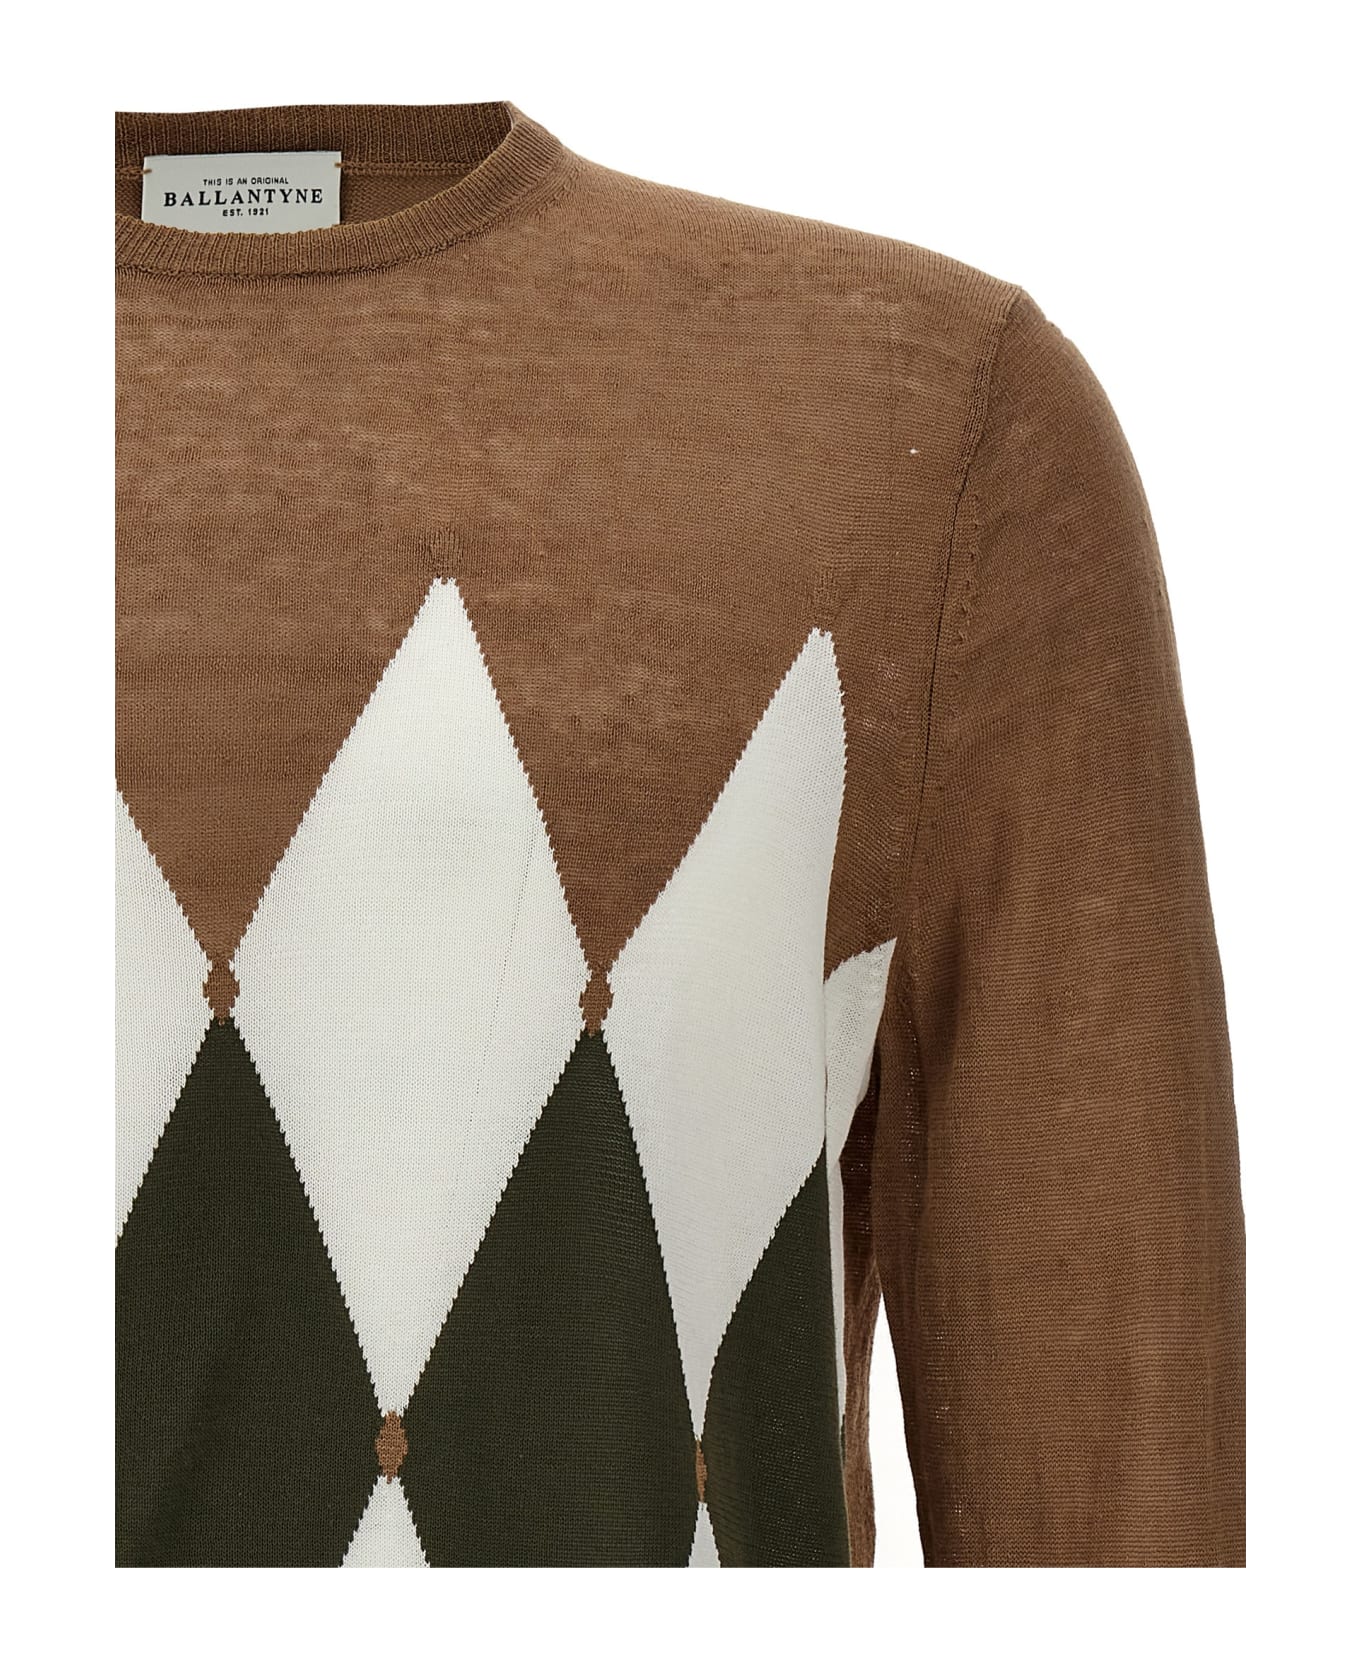 Ballantyne 'argyle' Sweater - Brown ニットウェア